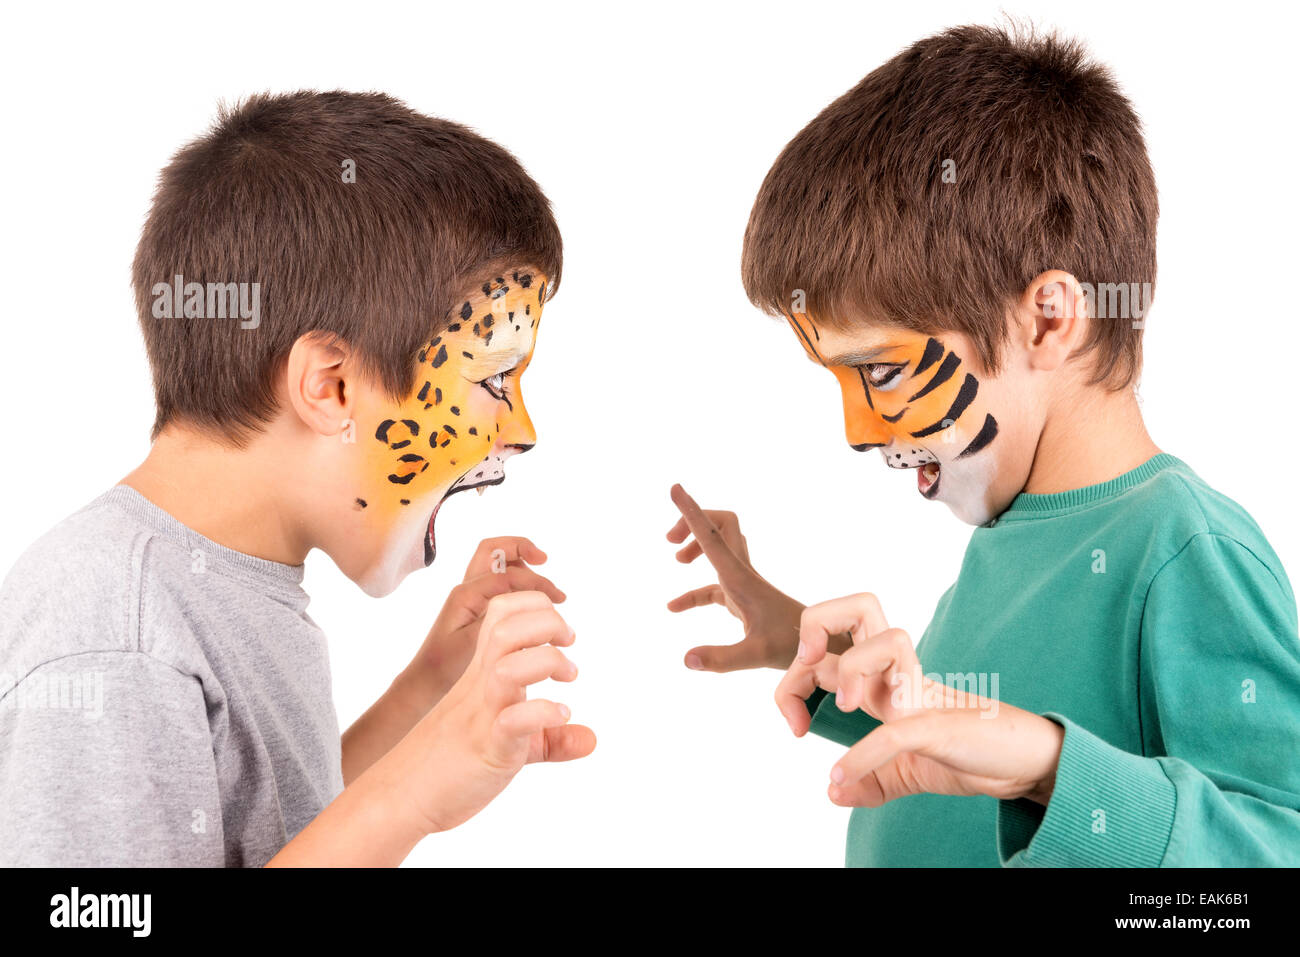 Los muchachos con cara felina-Paint roaring aislados en blanco Foto de stock